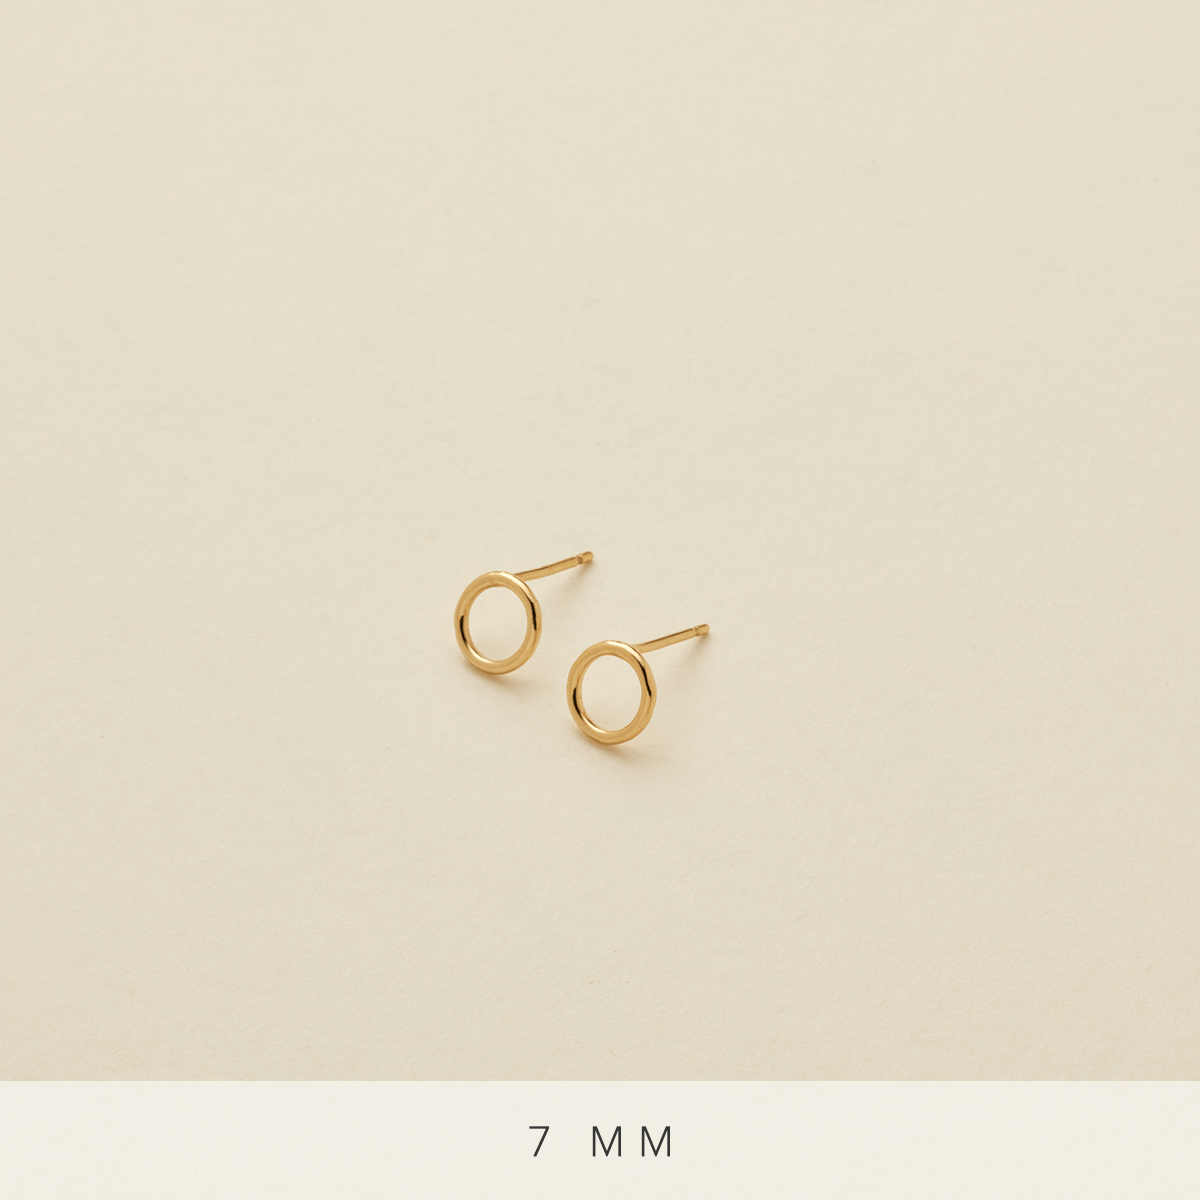 Circlet Earrings Gold Filled / 7mm Earring